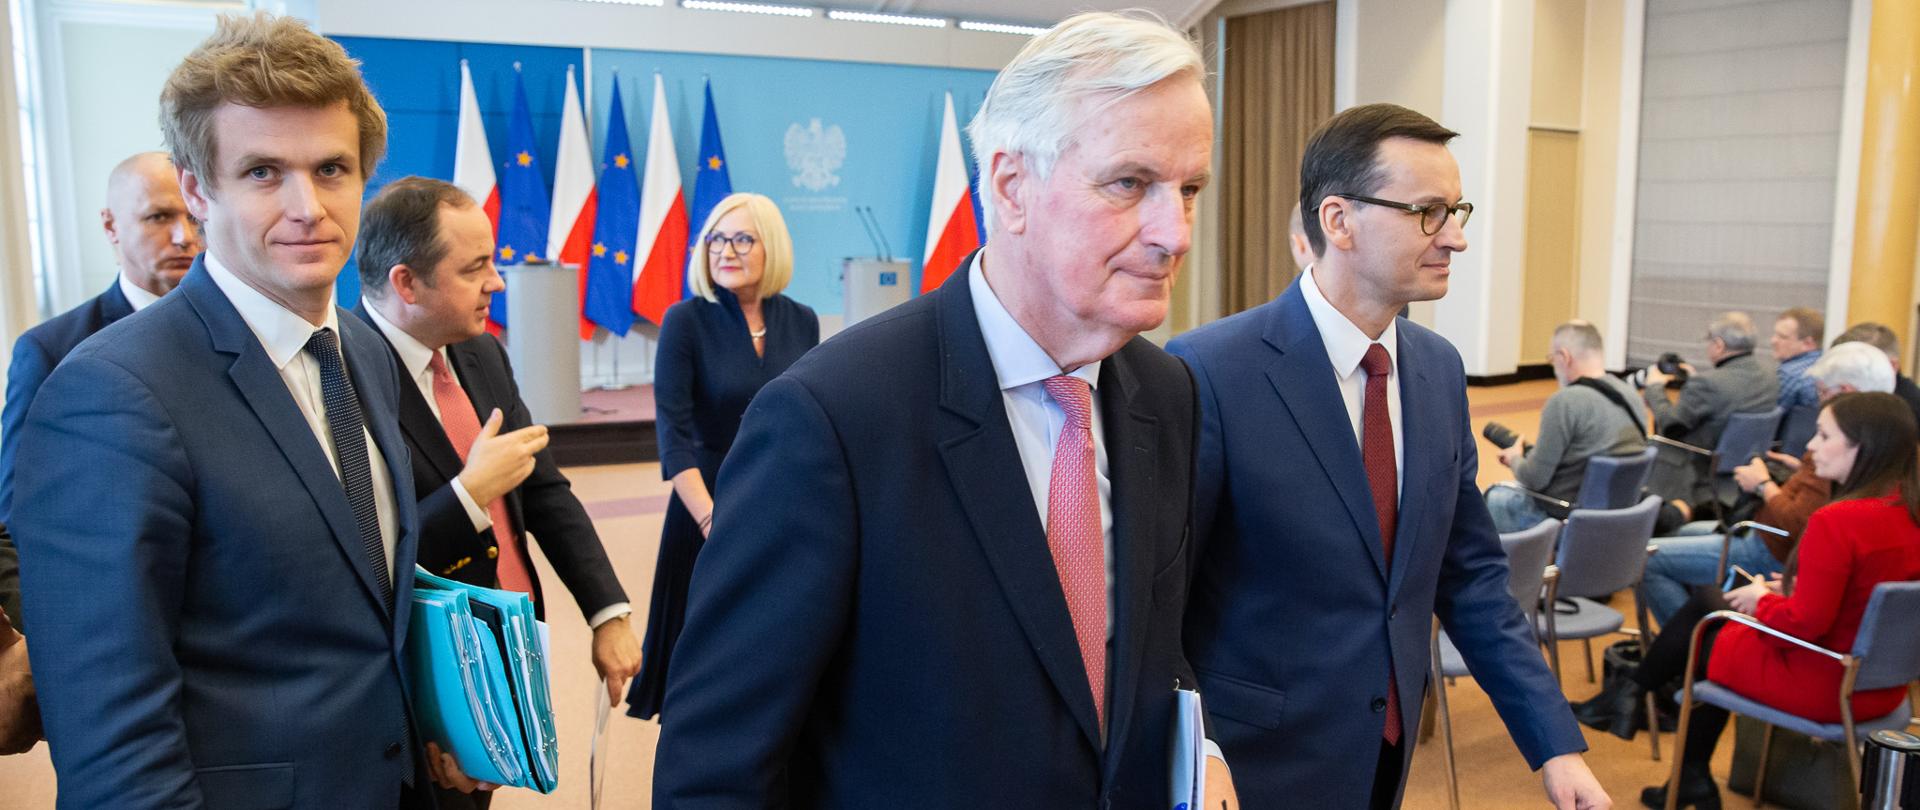 Deputy FM Konrad Szymański and Michele Barnier meeting